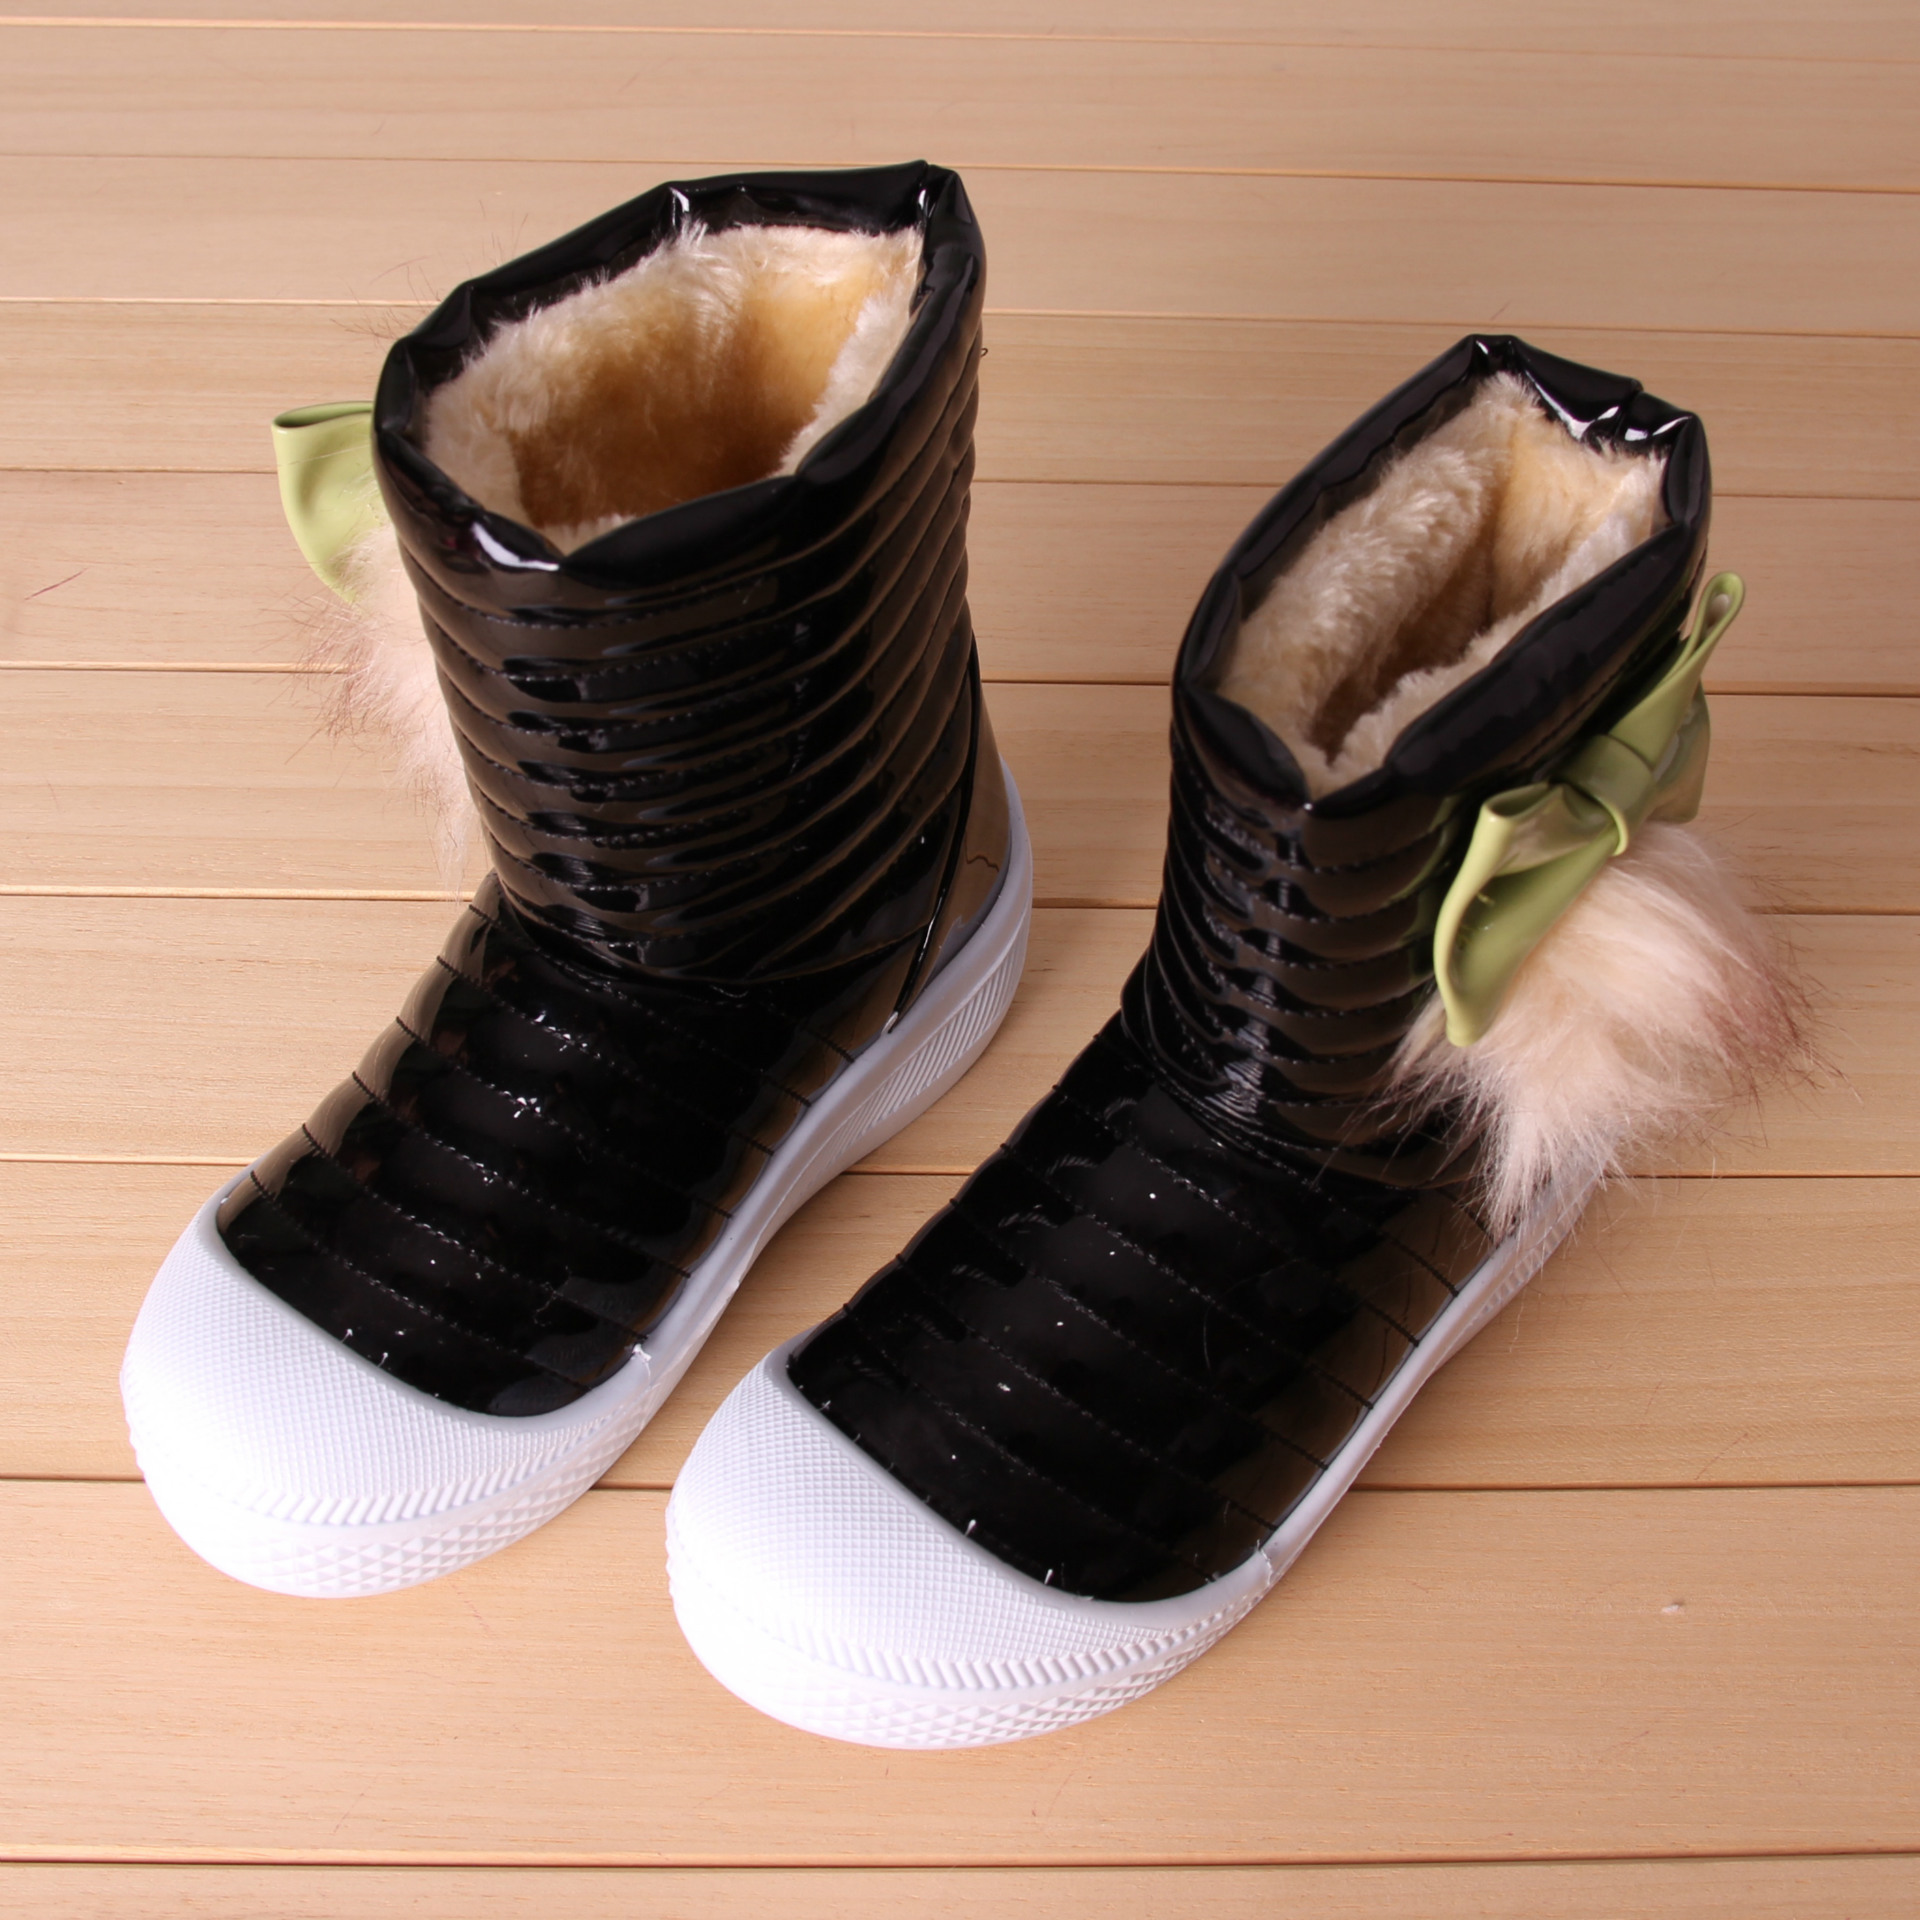 2013年冬季新款儿童雪地靴 蝴蝶结漆皮亮皮糖果色童靴童鞋批发